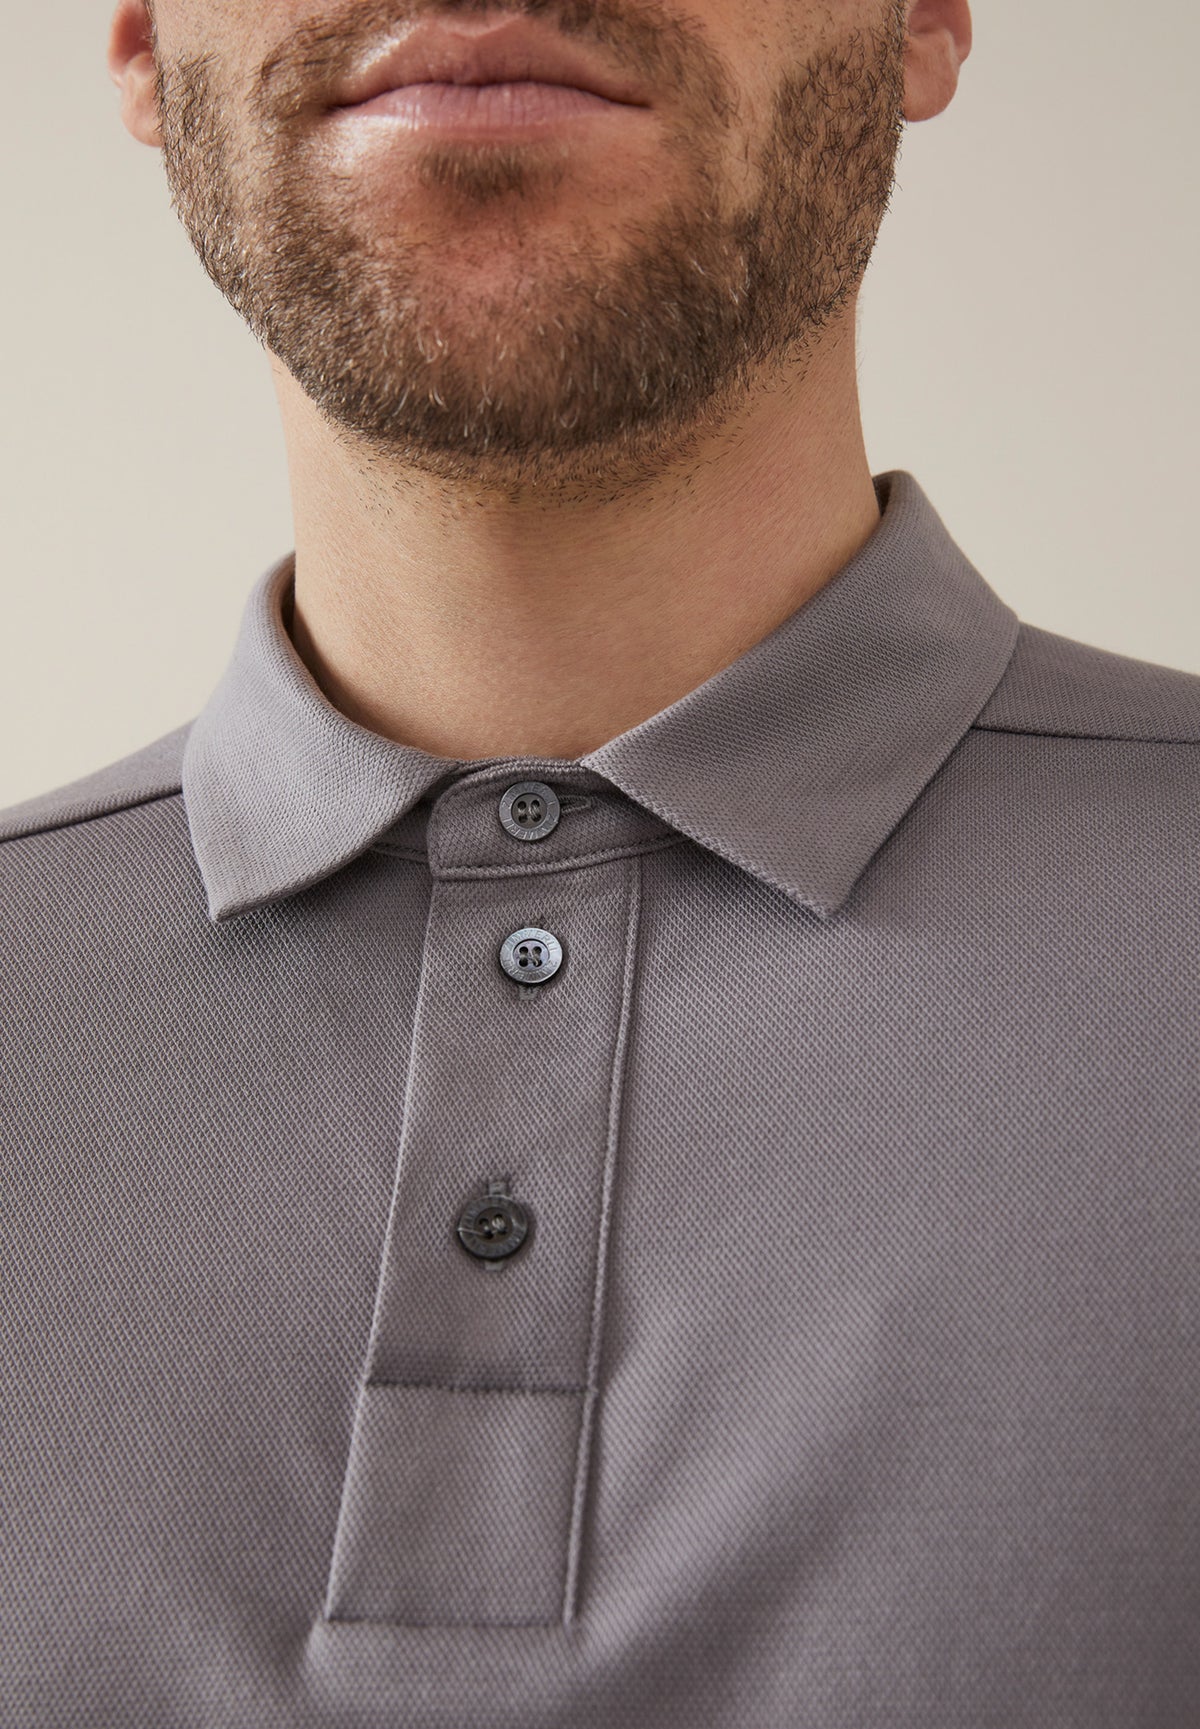 Piqué Lounge | Polo Shirt Short Sleeve - silver